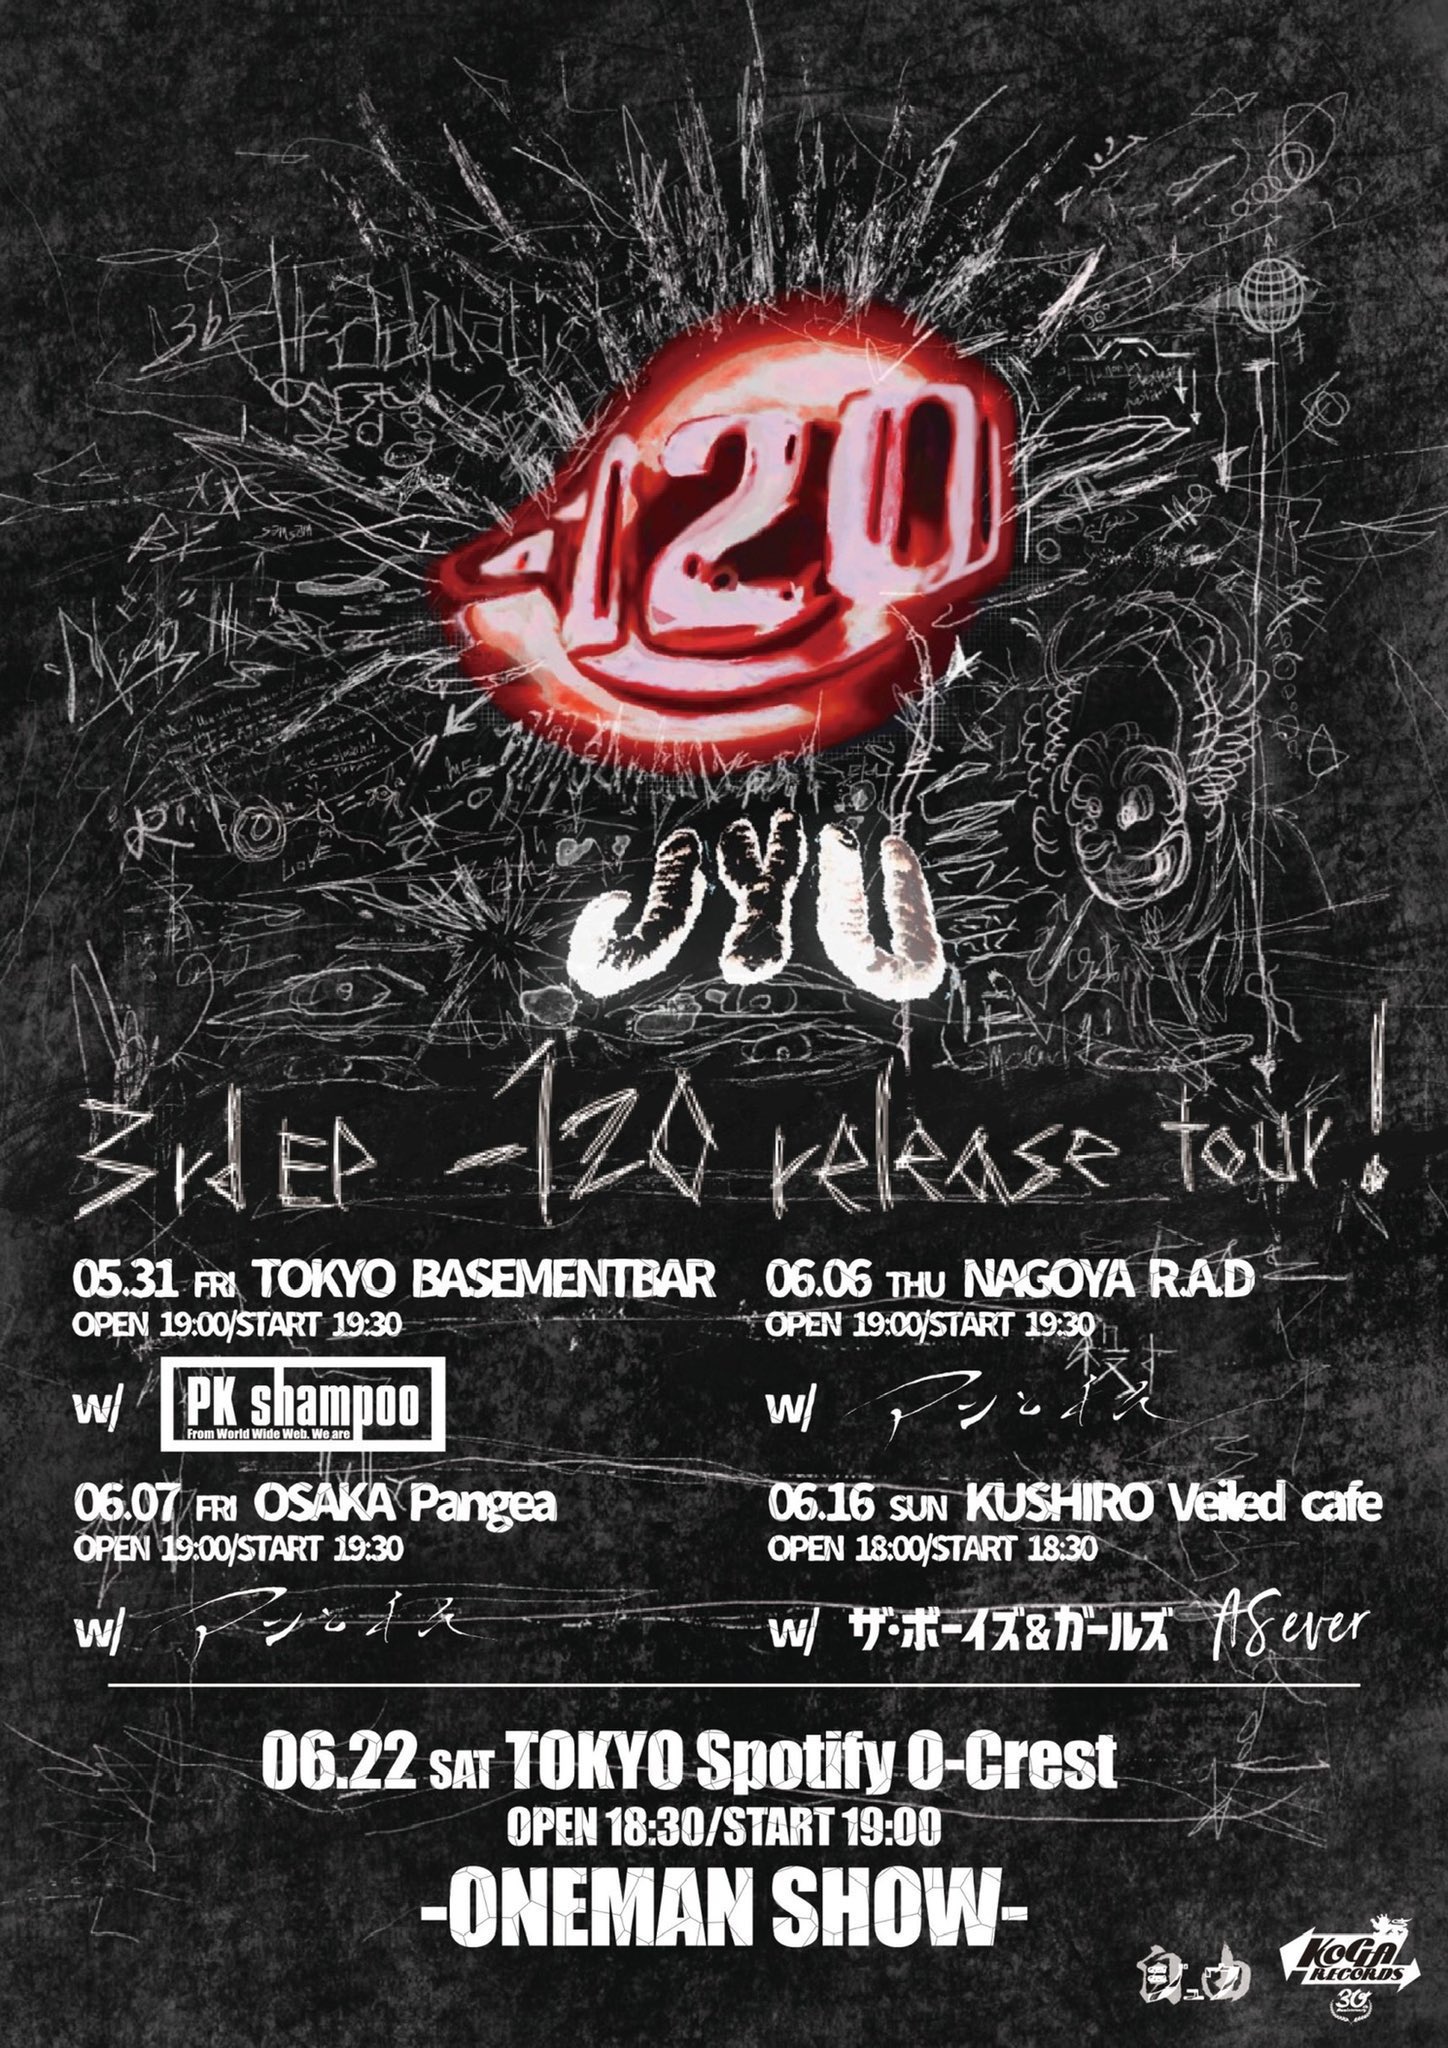 ジュウ 3rd EP -120 release tour